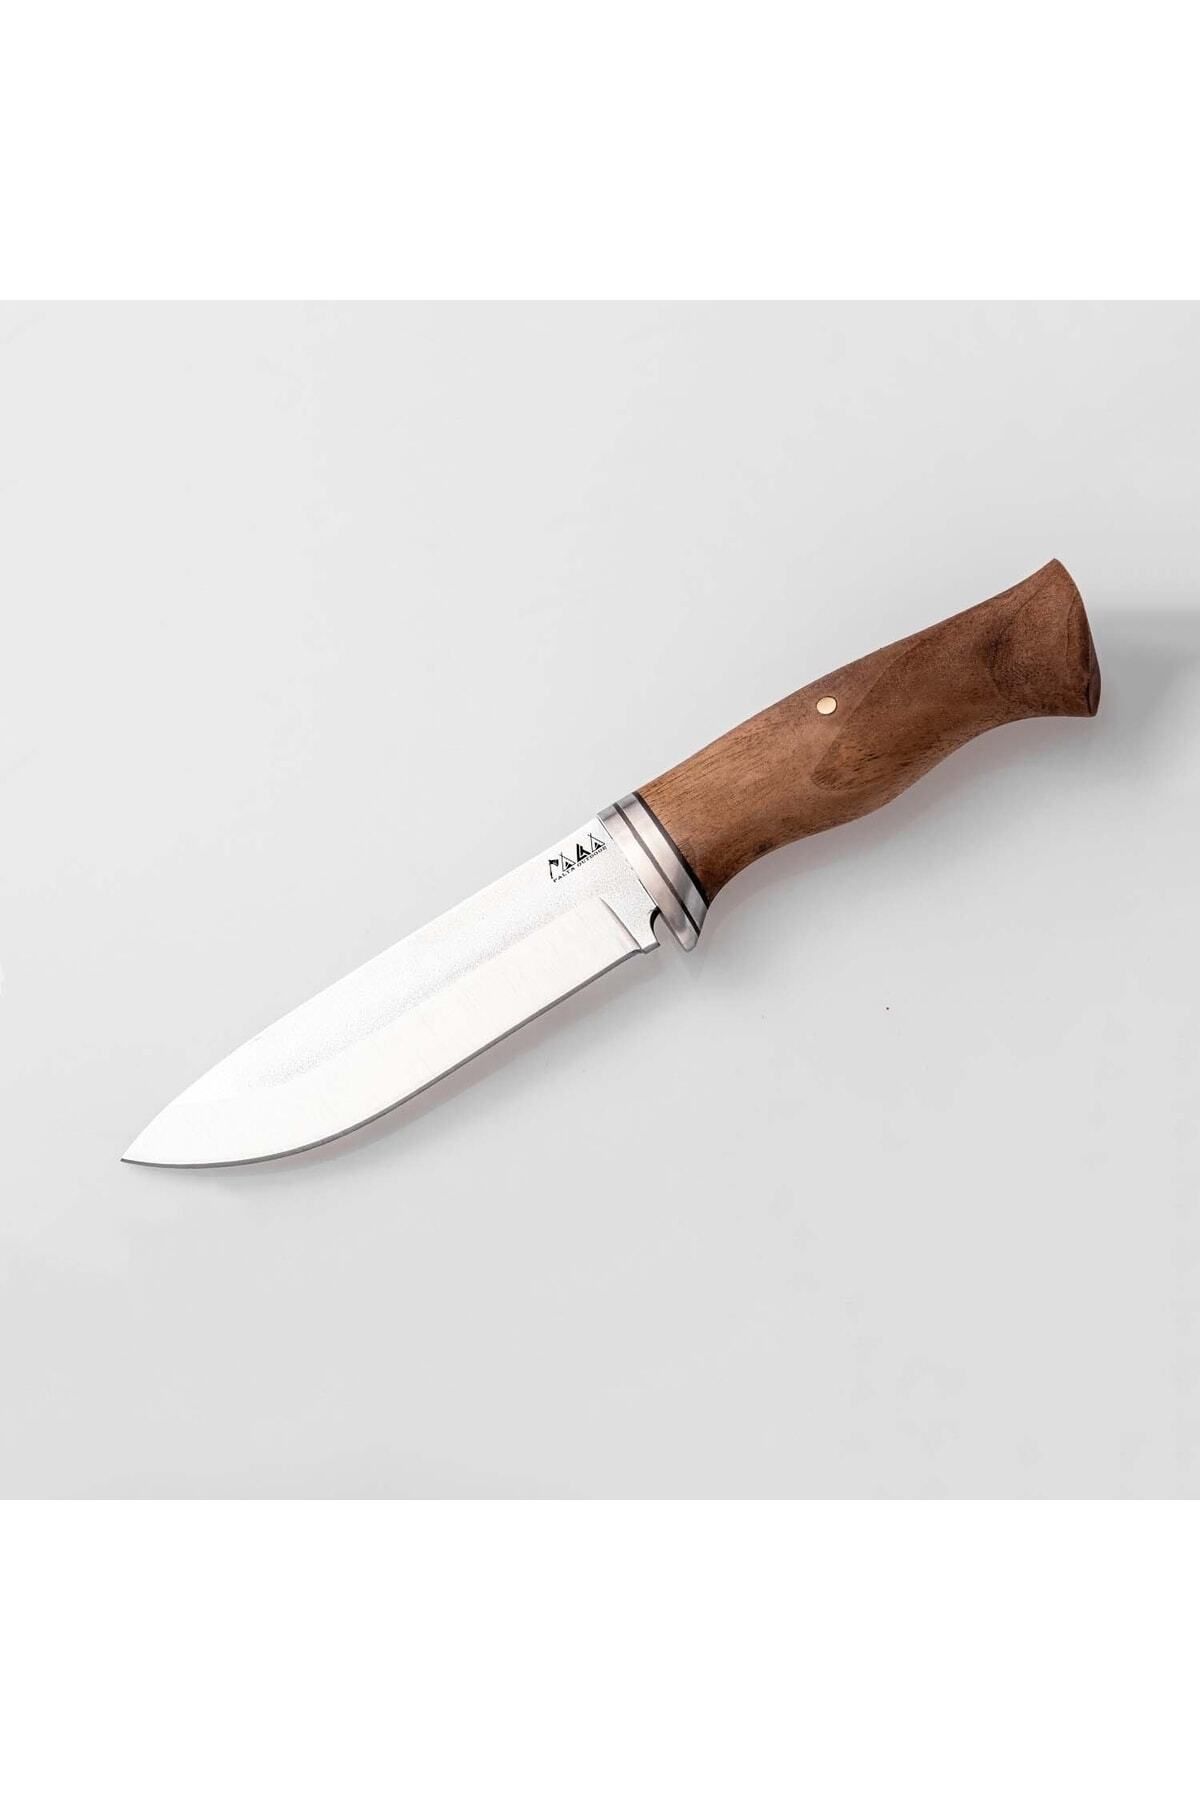 PALTA OUTDOOR Avcı Bıçağı Kamp Bıçağı Deri Kılıf Hediyeli Outdoor Bıçak El Yapımı Hediyelik Eşya Paslanmaz Çelik